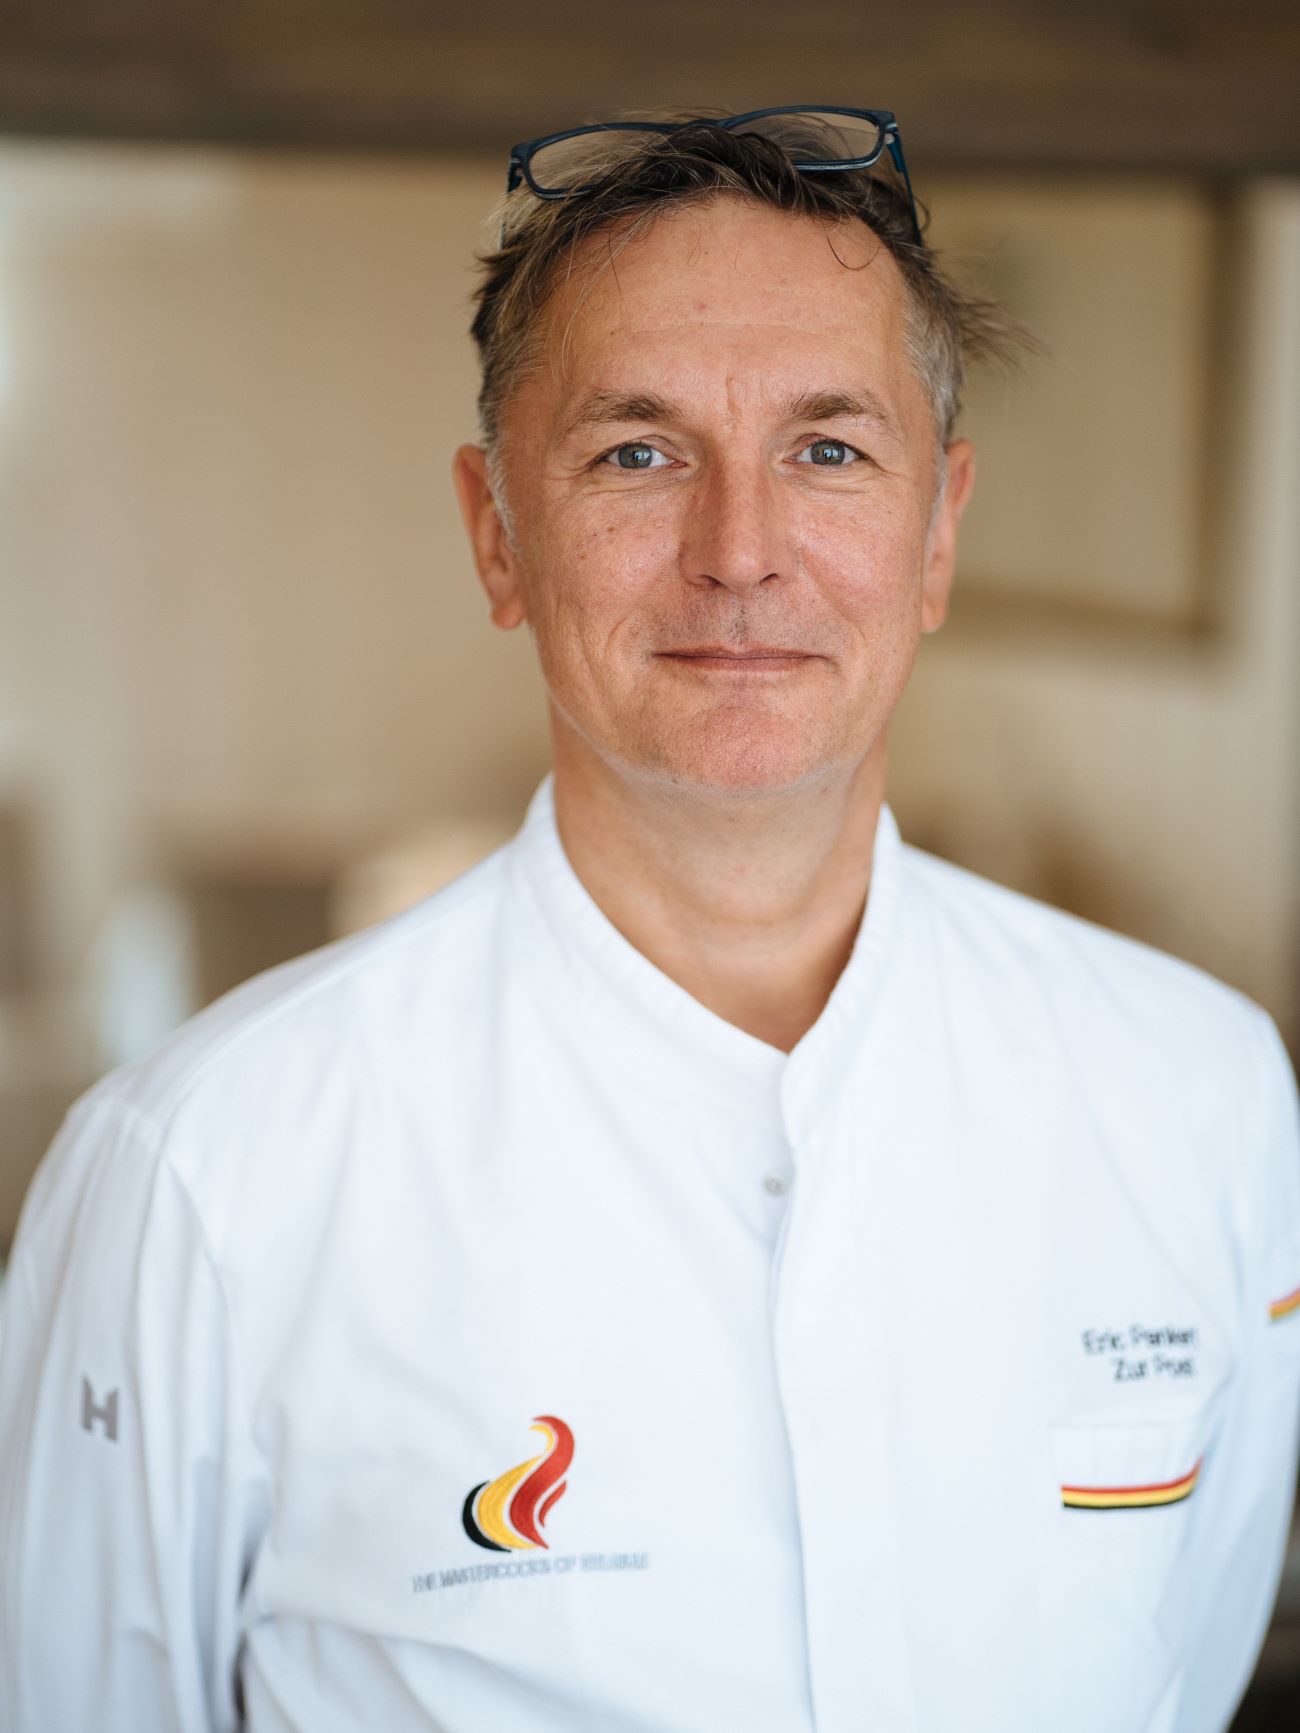 Dies ist ein Porträt von Erik Pankert, dem Chefkoch, der mit einem leichten Lächeln direkt in die Kamera schaut. Er hat graue Haare, trägt seine Brille auf dem Kopf und eine weiße Küchenuniform.